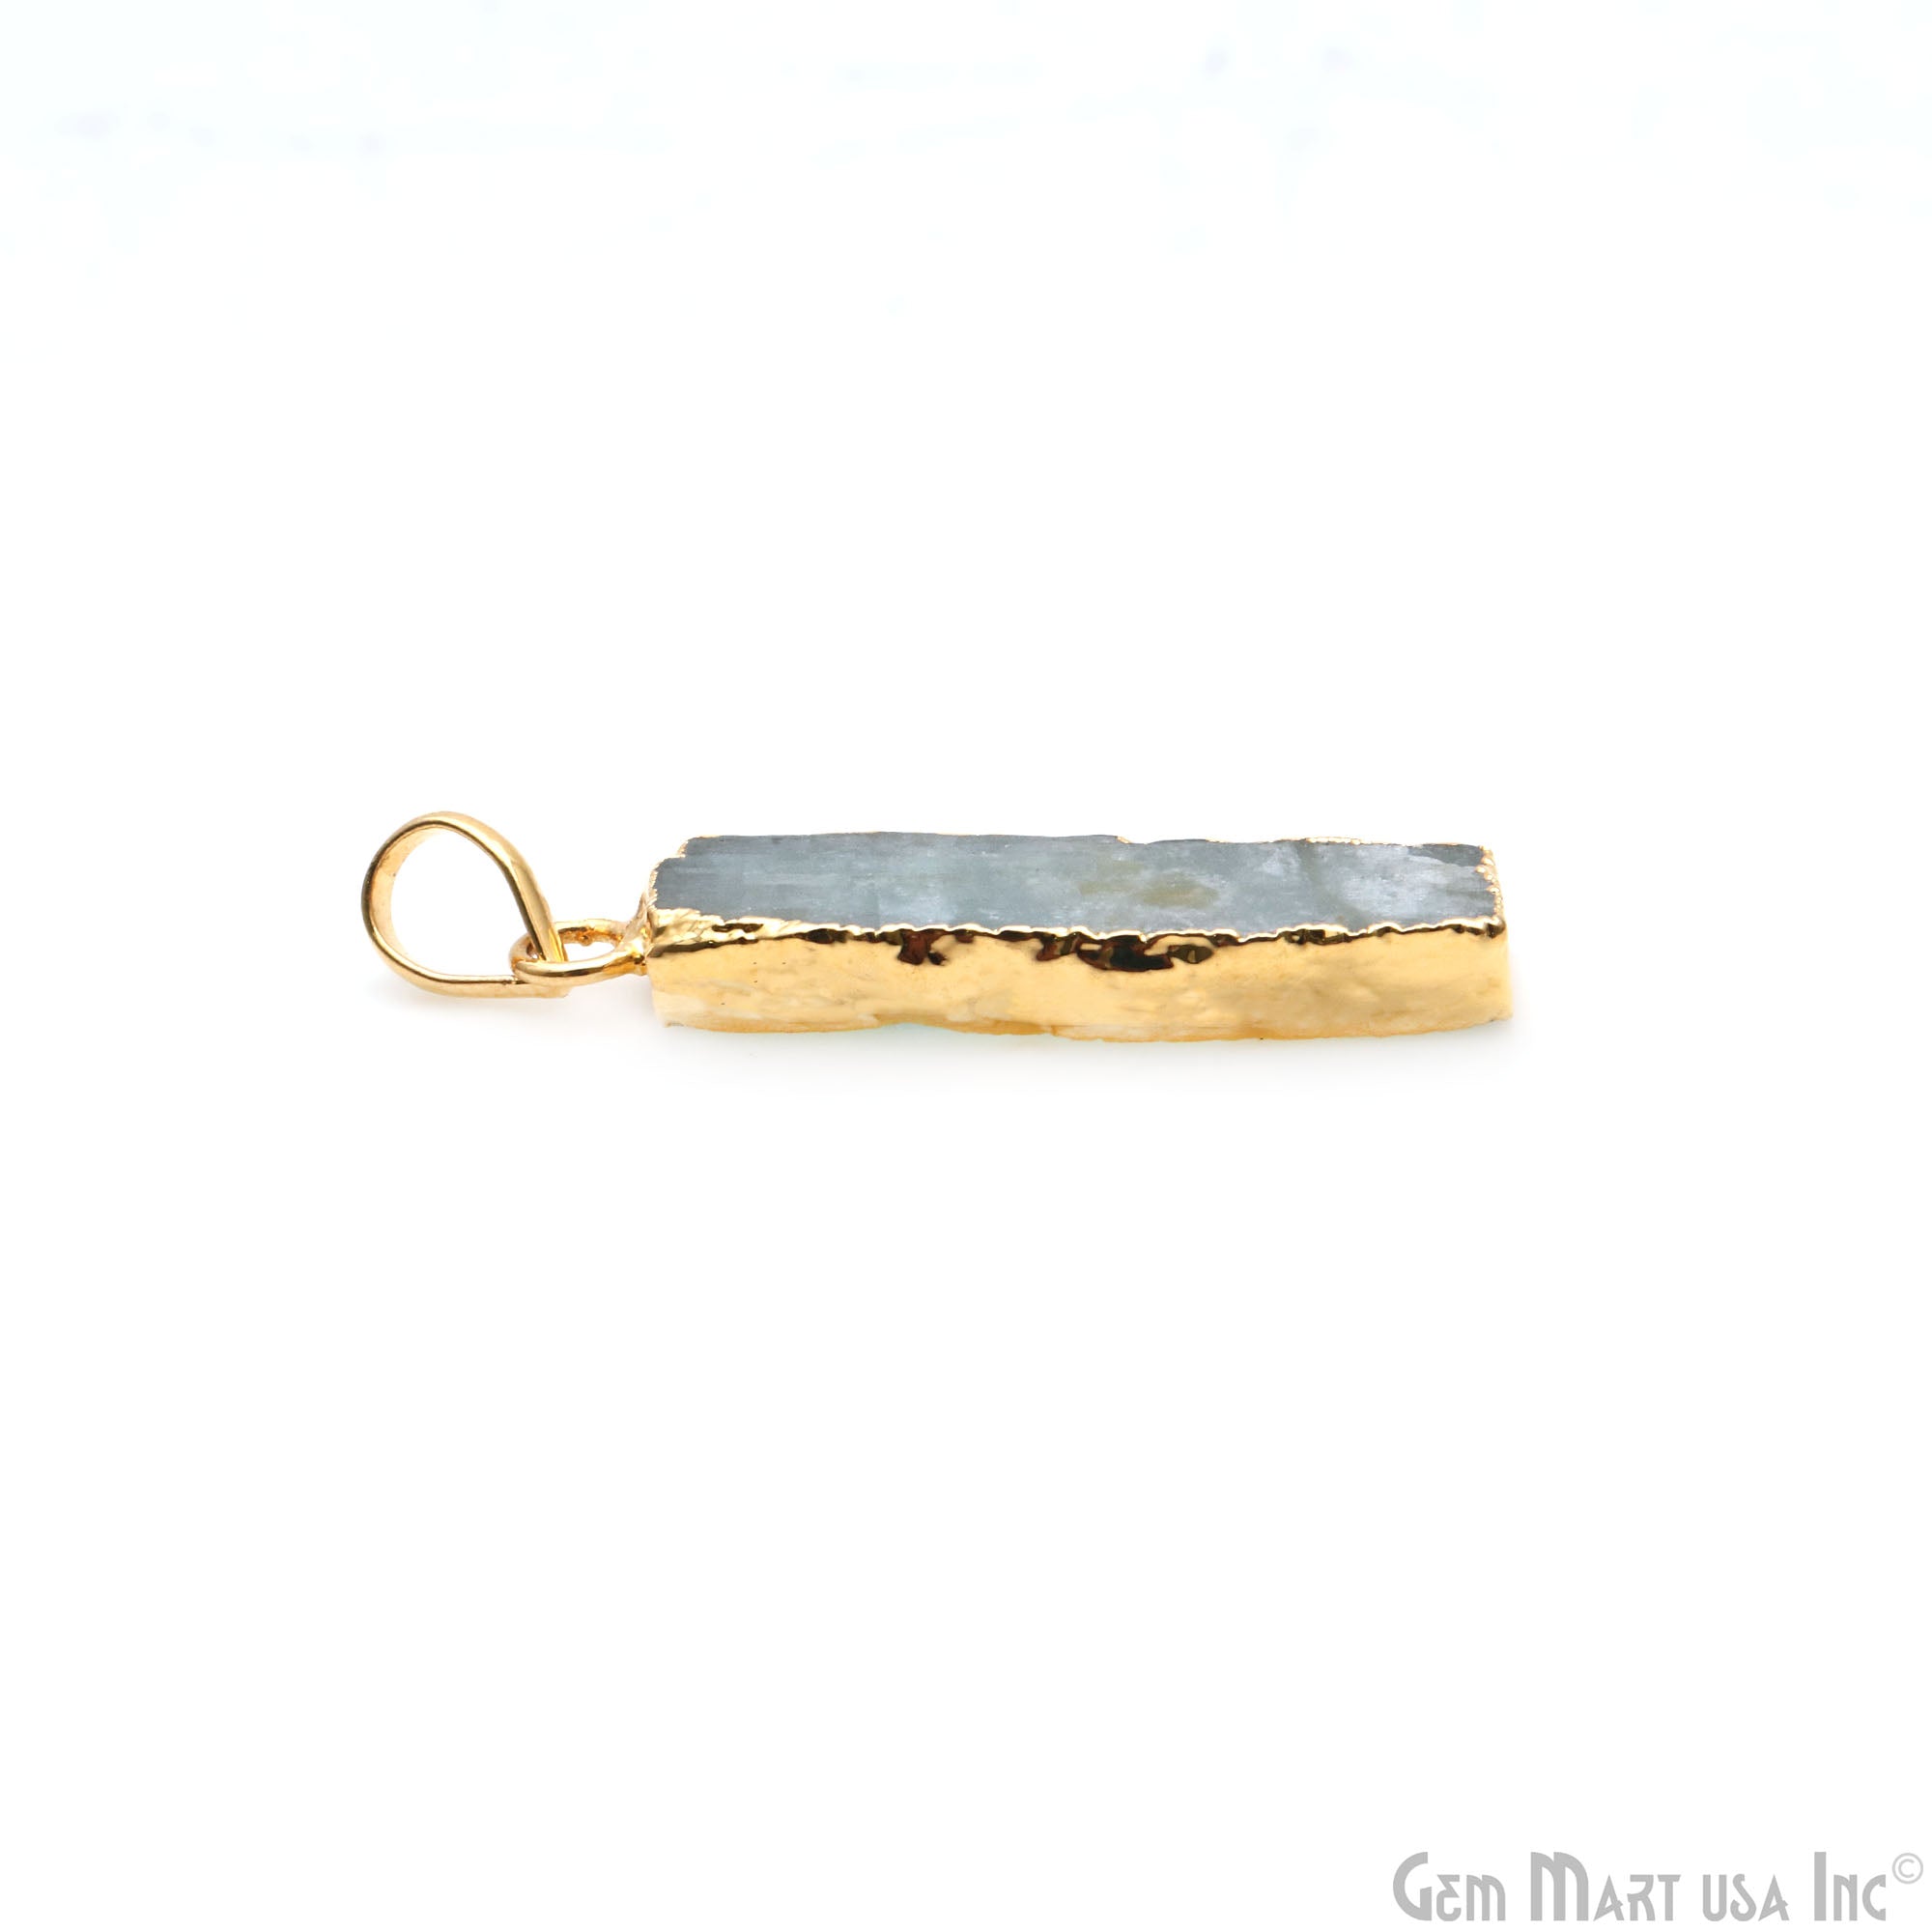 Aquamarine Free Form shape 35x10mm Gold Electroplated Gemstone Single Bail Pendant